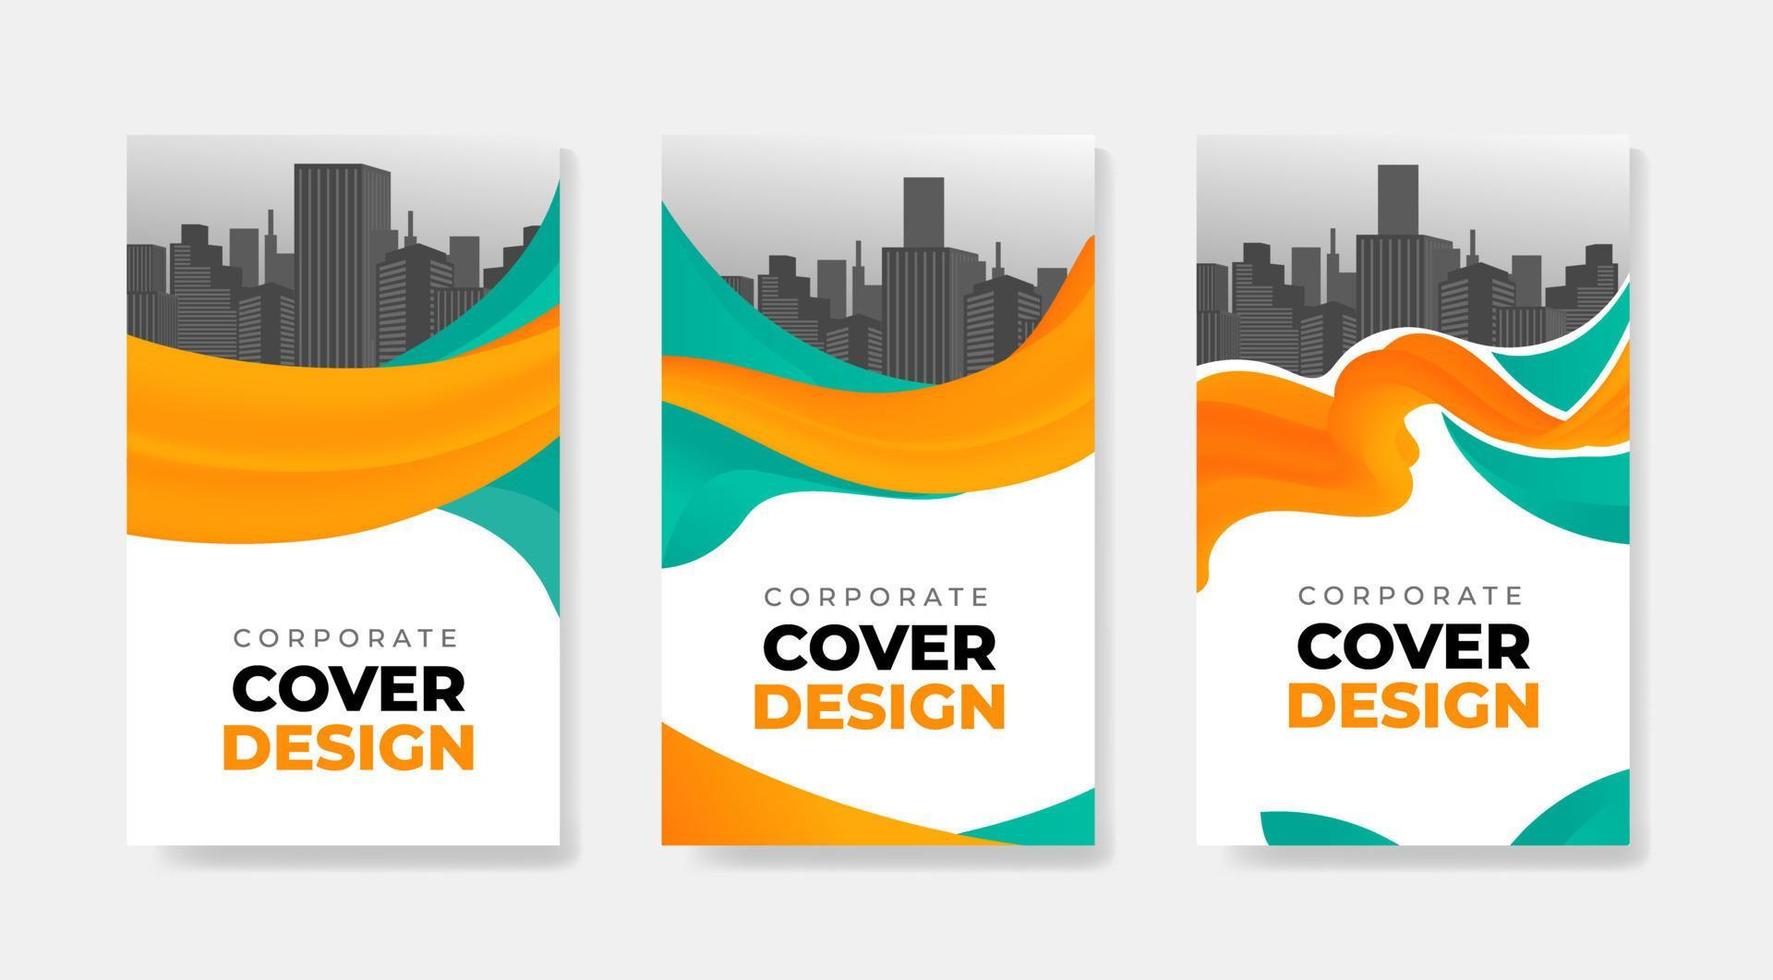 diseño corporativo moderno para folleto, informe anual, afiche, volante, diseño de tamaño a4 vector